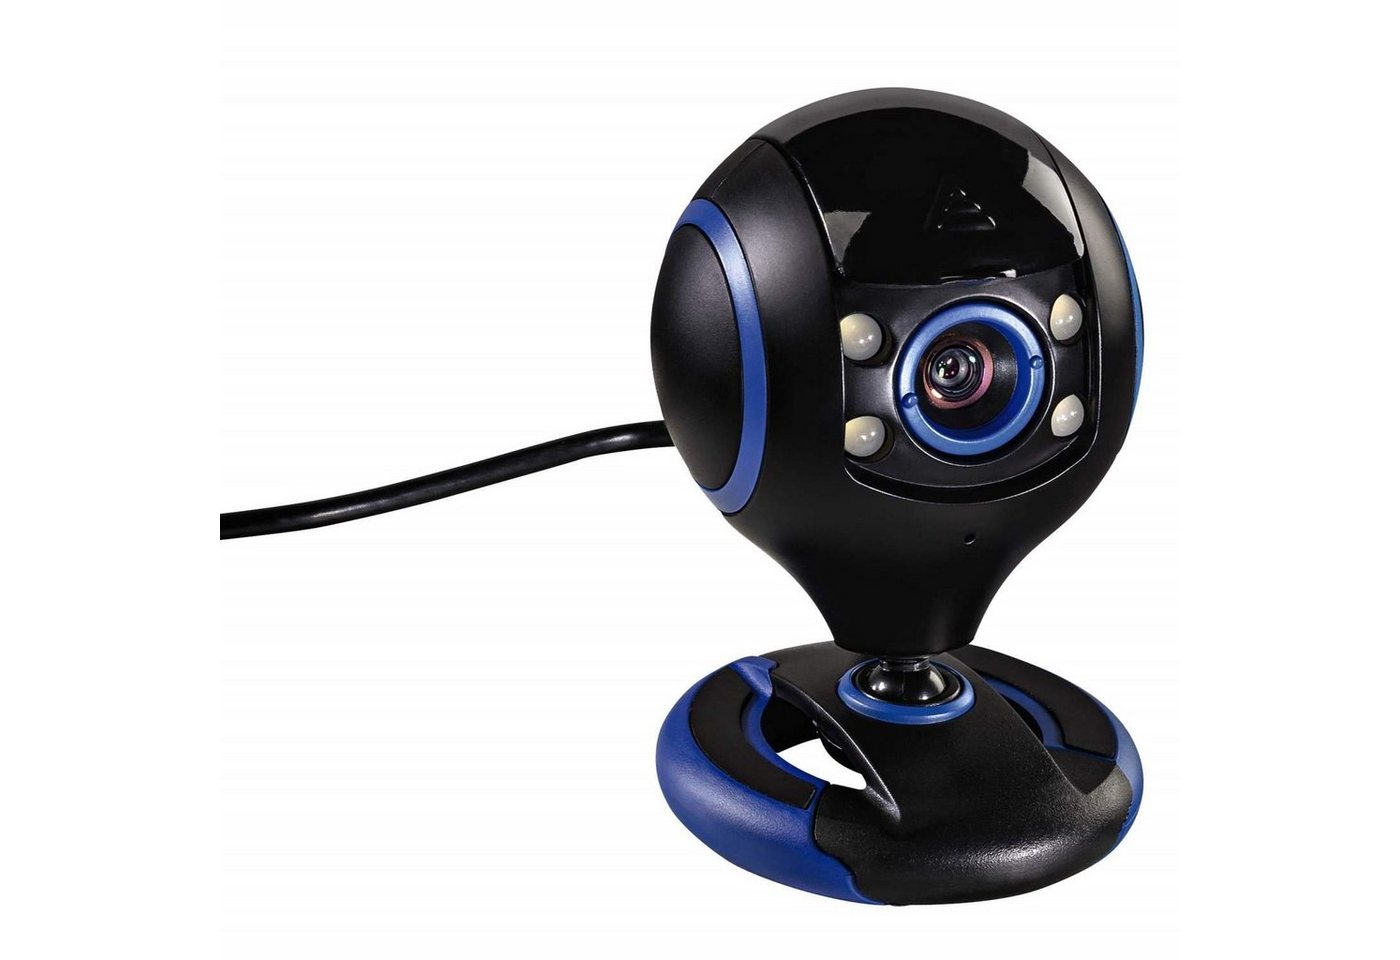 uRage HD Webcam REC 200 Web-Kamera 720p 30 fps Webcam (mit Mikrofon und LED-Licht verschließbare Linse 720p Auflösung USB 2.0) von Hama